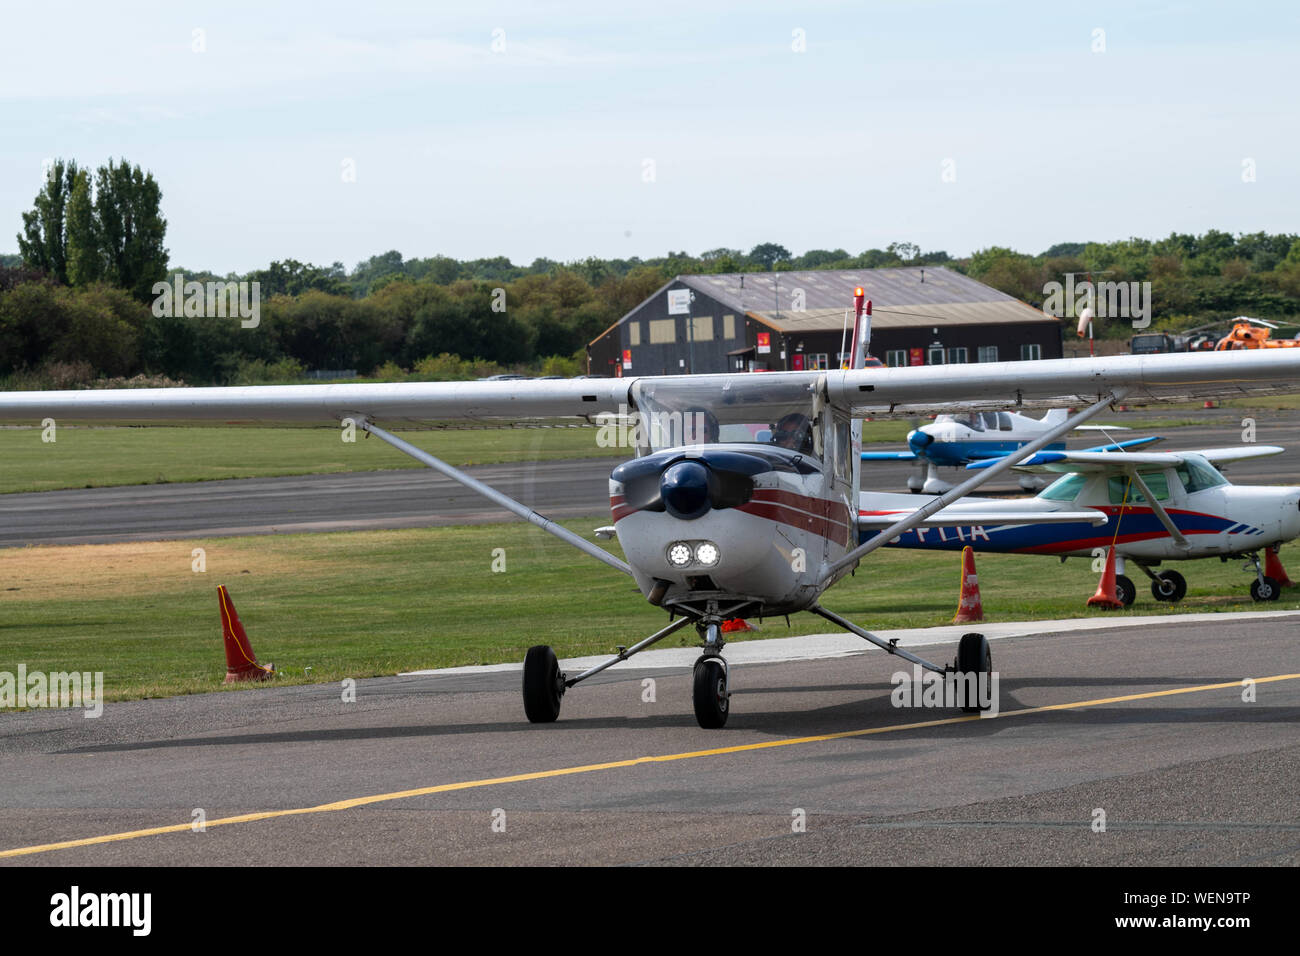 Reims Cessna FA152, G-bhmg, terres à partir d'un vol d'entraînement à North Weald Airfield Banque D'Images